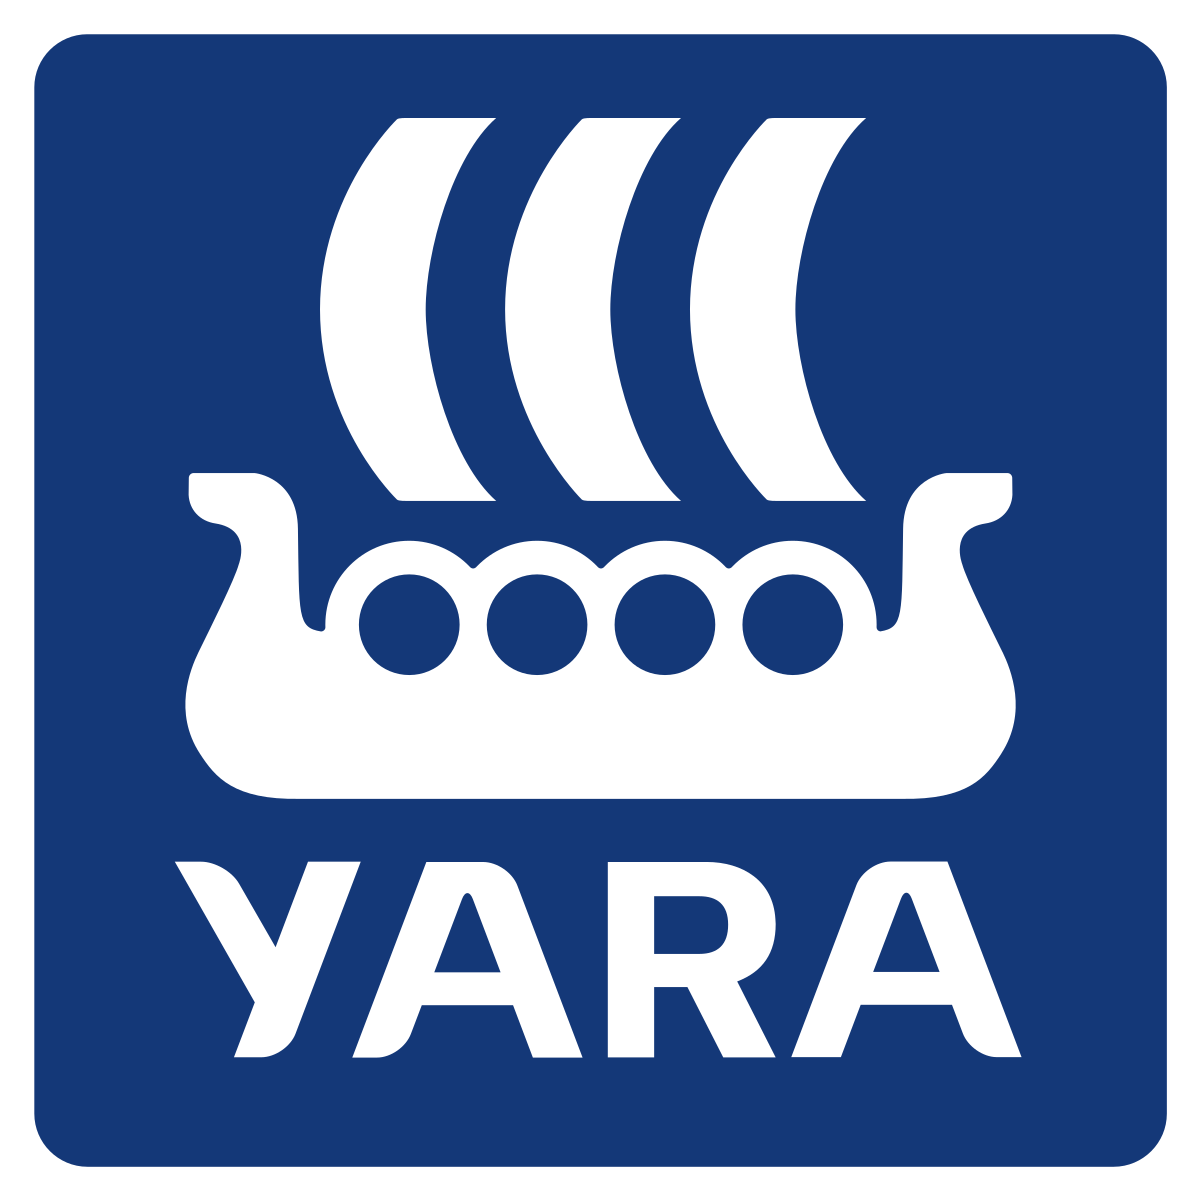 Yara Recruitment 2021